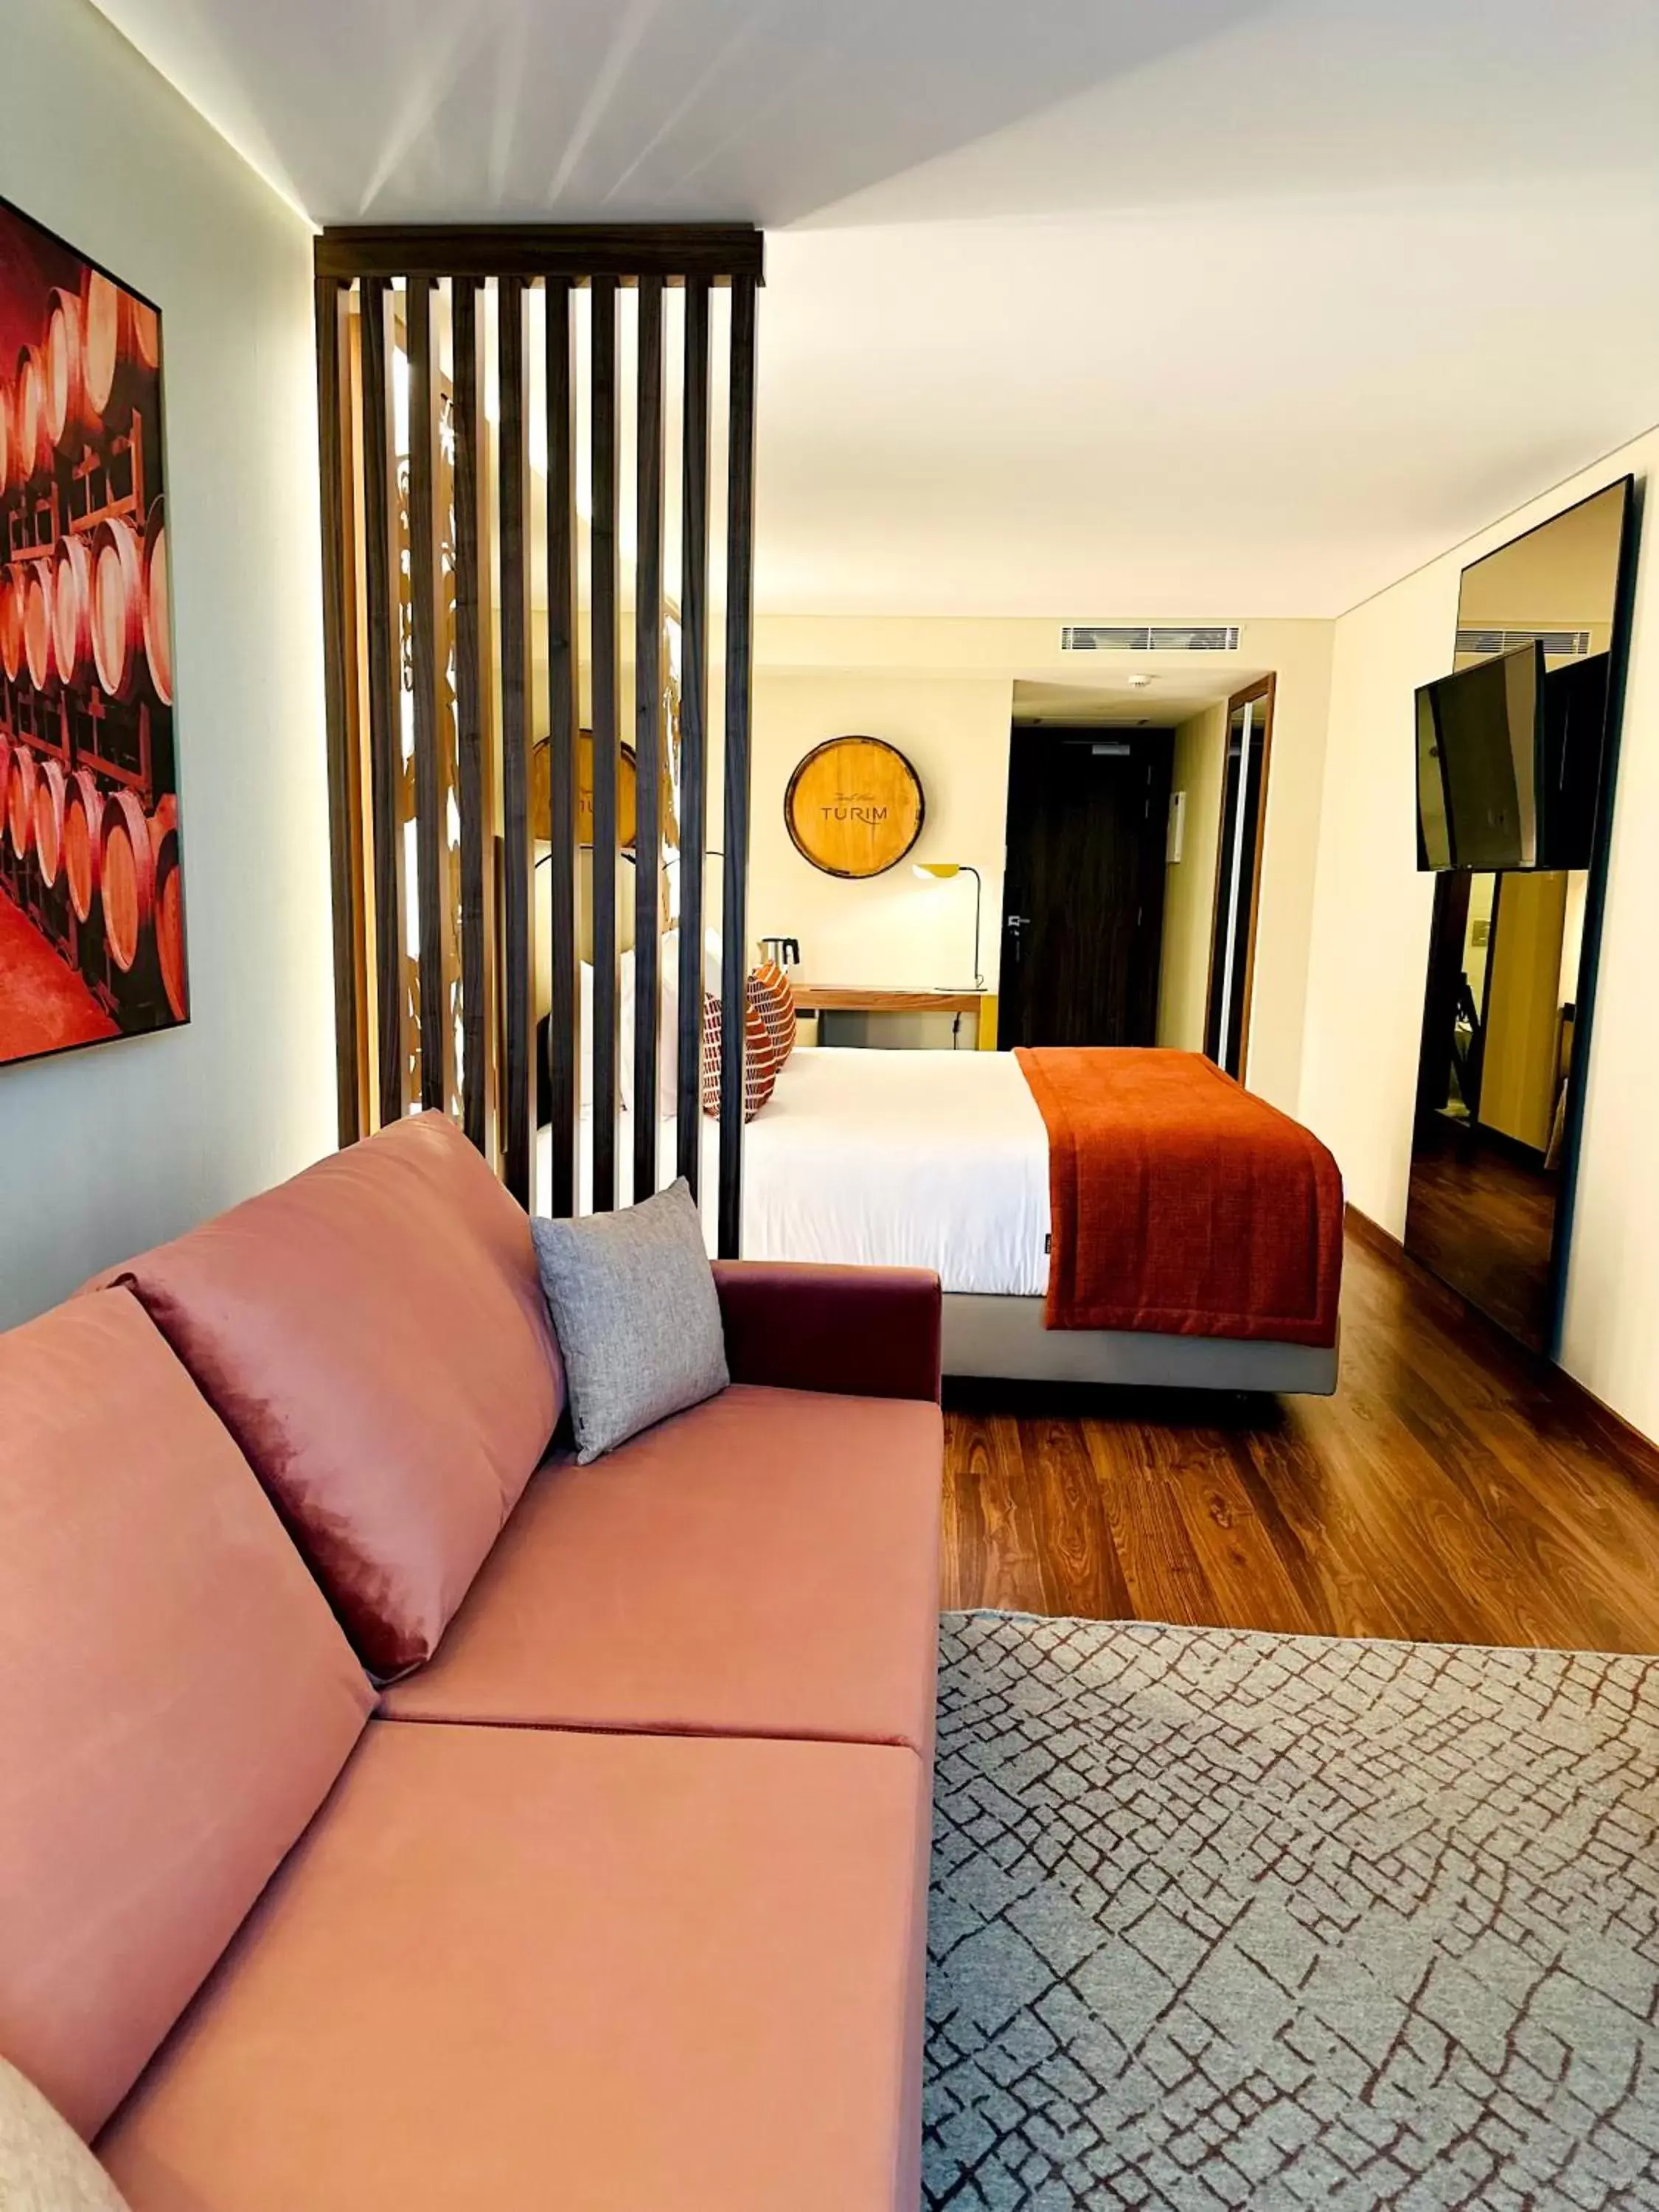 Bedroom in TURIM Oporto Hotel